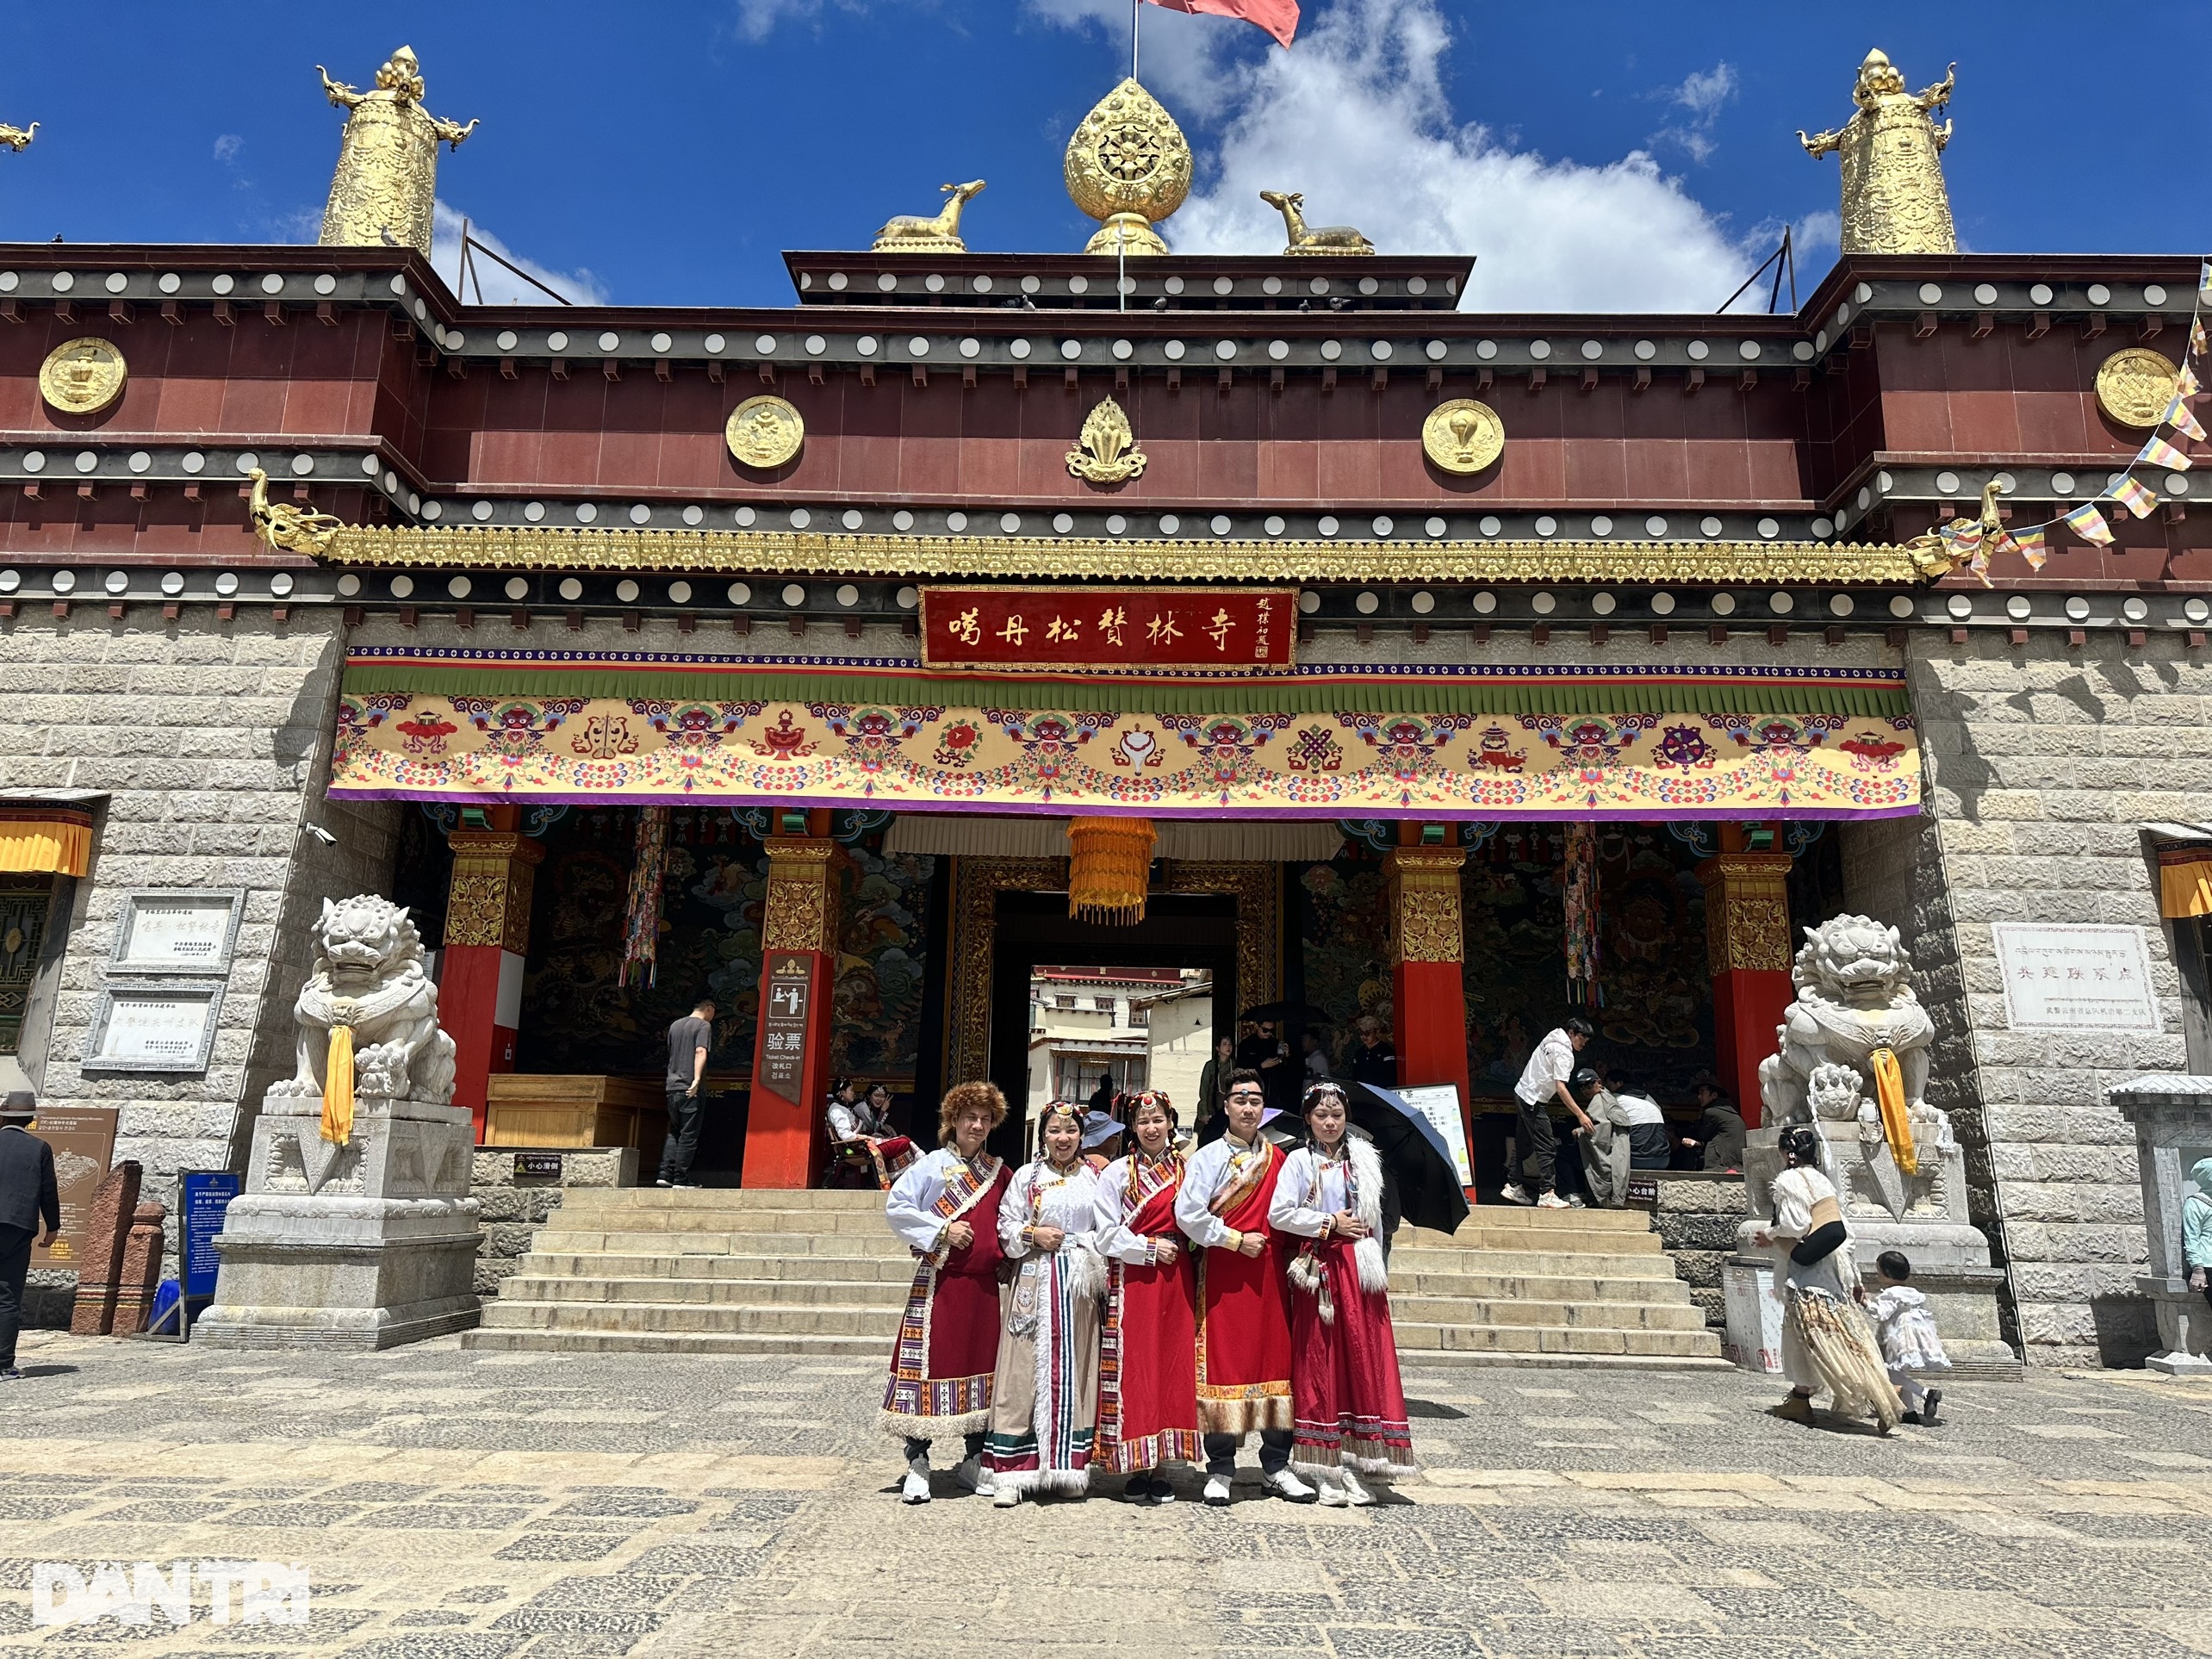 Nhiều tour tham quan Trung Quốc hấp dẫn du khách Việt khi Trung Quốc mở cửa trở lại sau dịch Covid-19 (Ảnh: Hồng Anh).